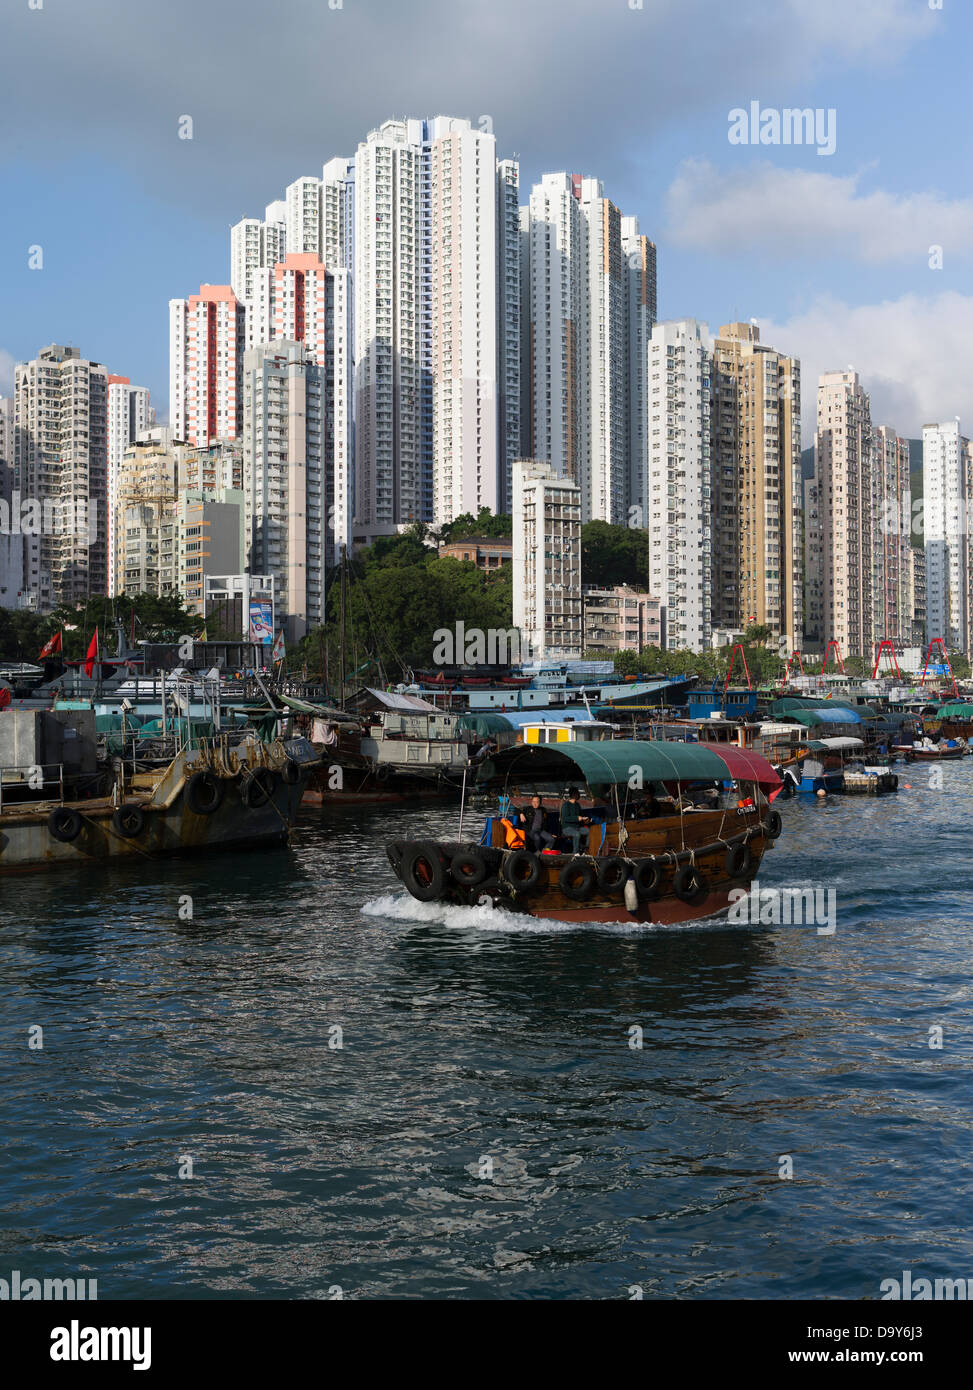 Dh ferry ABERDEEN HARBOUR sampan chinois HONG KONG gratte-ciel résidentiel Appartements de grande hauteur du port de l'île de bateaux de transport de courrier indésirable Banque D'Images